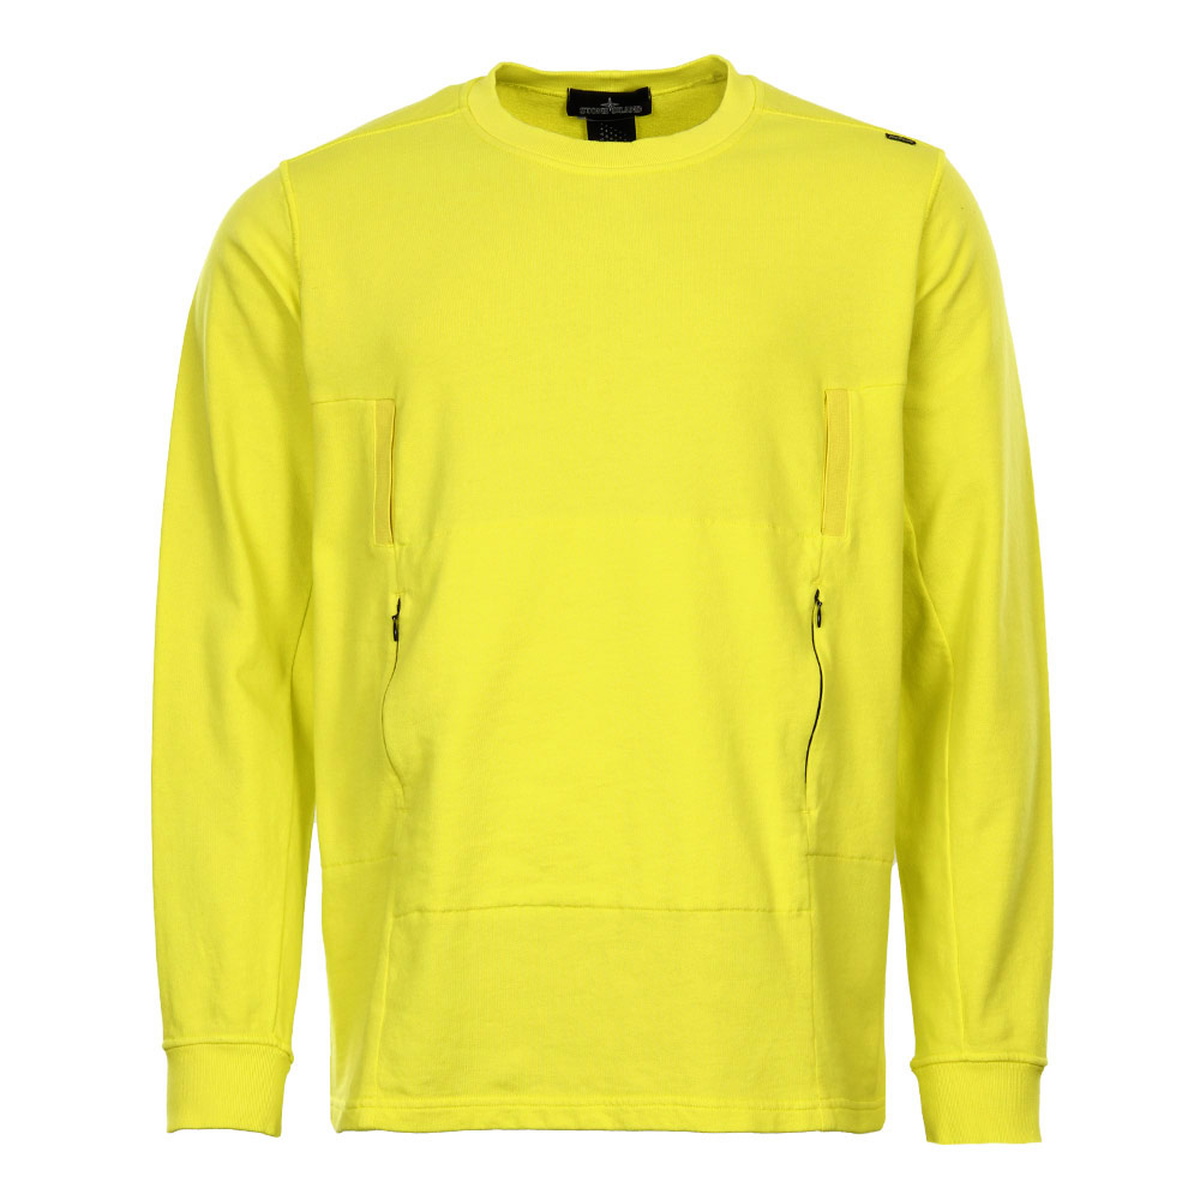 Sweatshirt - Yellow